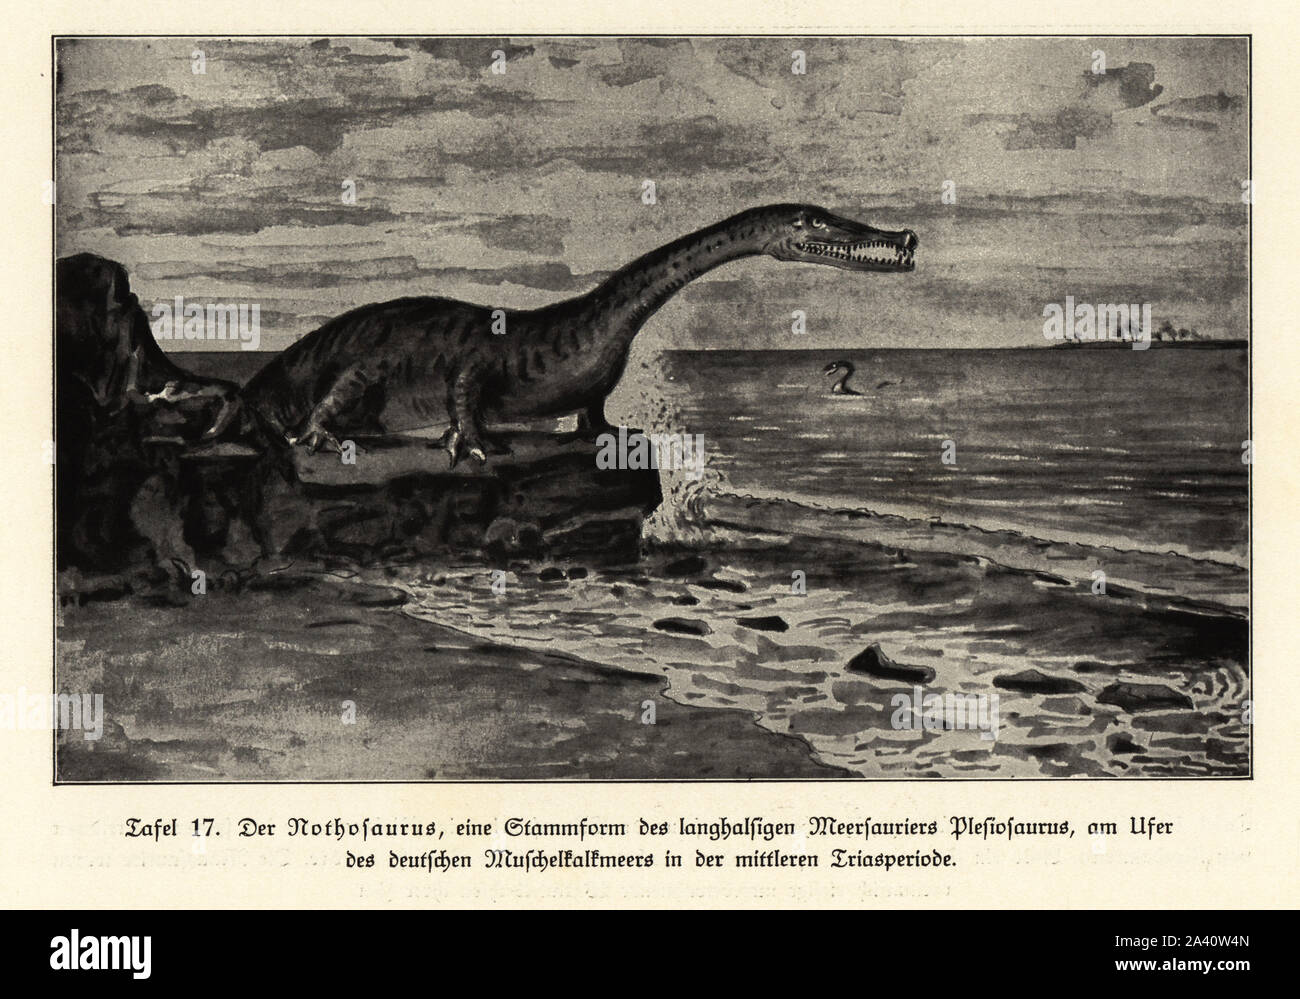 Nothosaurus, estinto genere di sauropterygian reptile dal guscio cuscinetto-mari di calcare, a metà periodo Triassico. Illustrazione da Wilhelm Bolsche's Das Leben der Urwelt, vita preistorica, Georg Dollheimer, Lipsia, 1932. Foto Stock